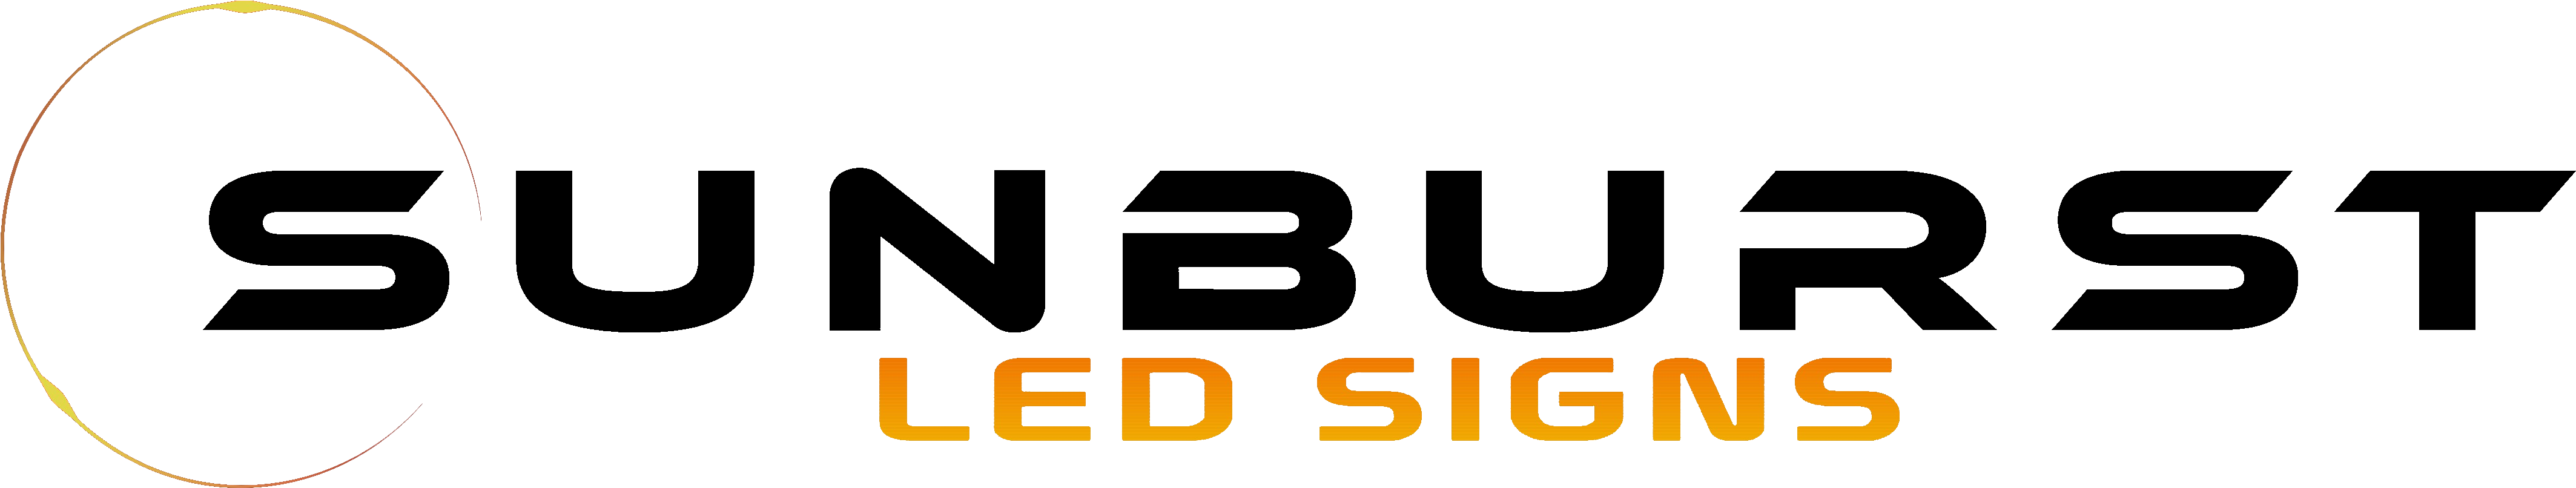 Led Signs And Electronic Signage - Electronic Signage (4356x916)